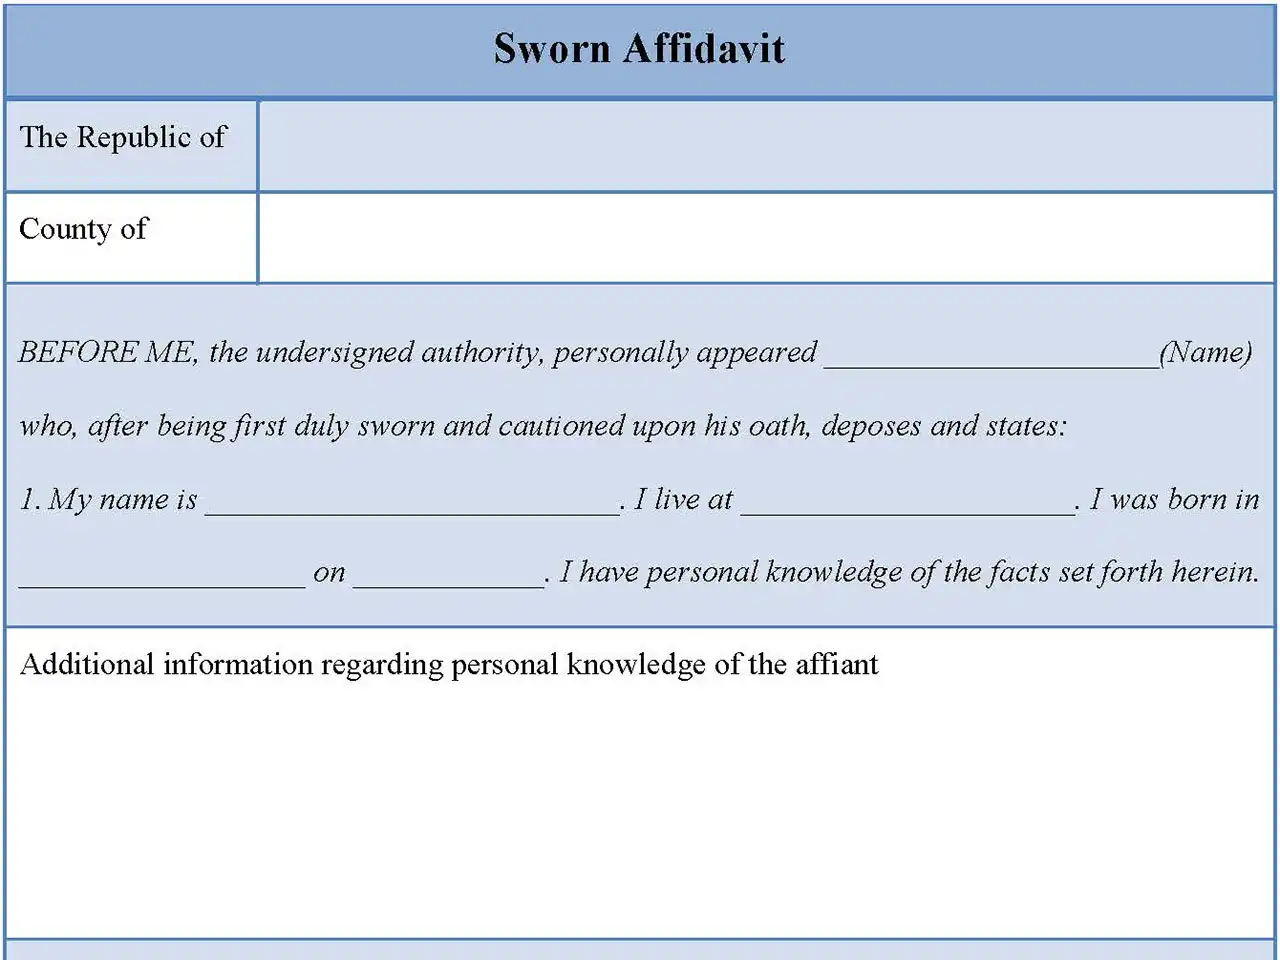 Sworn Affidavit Form